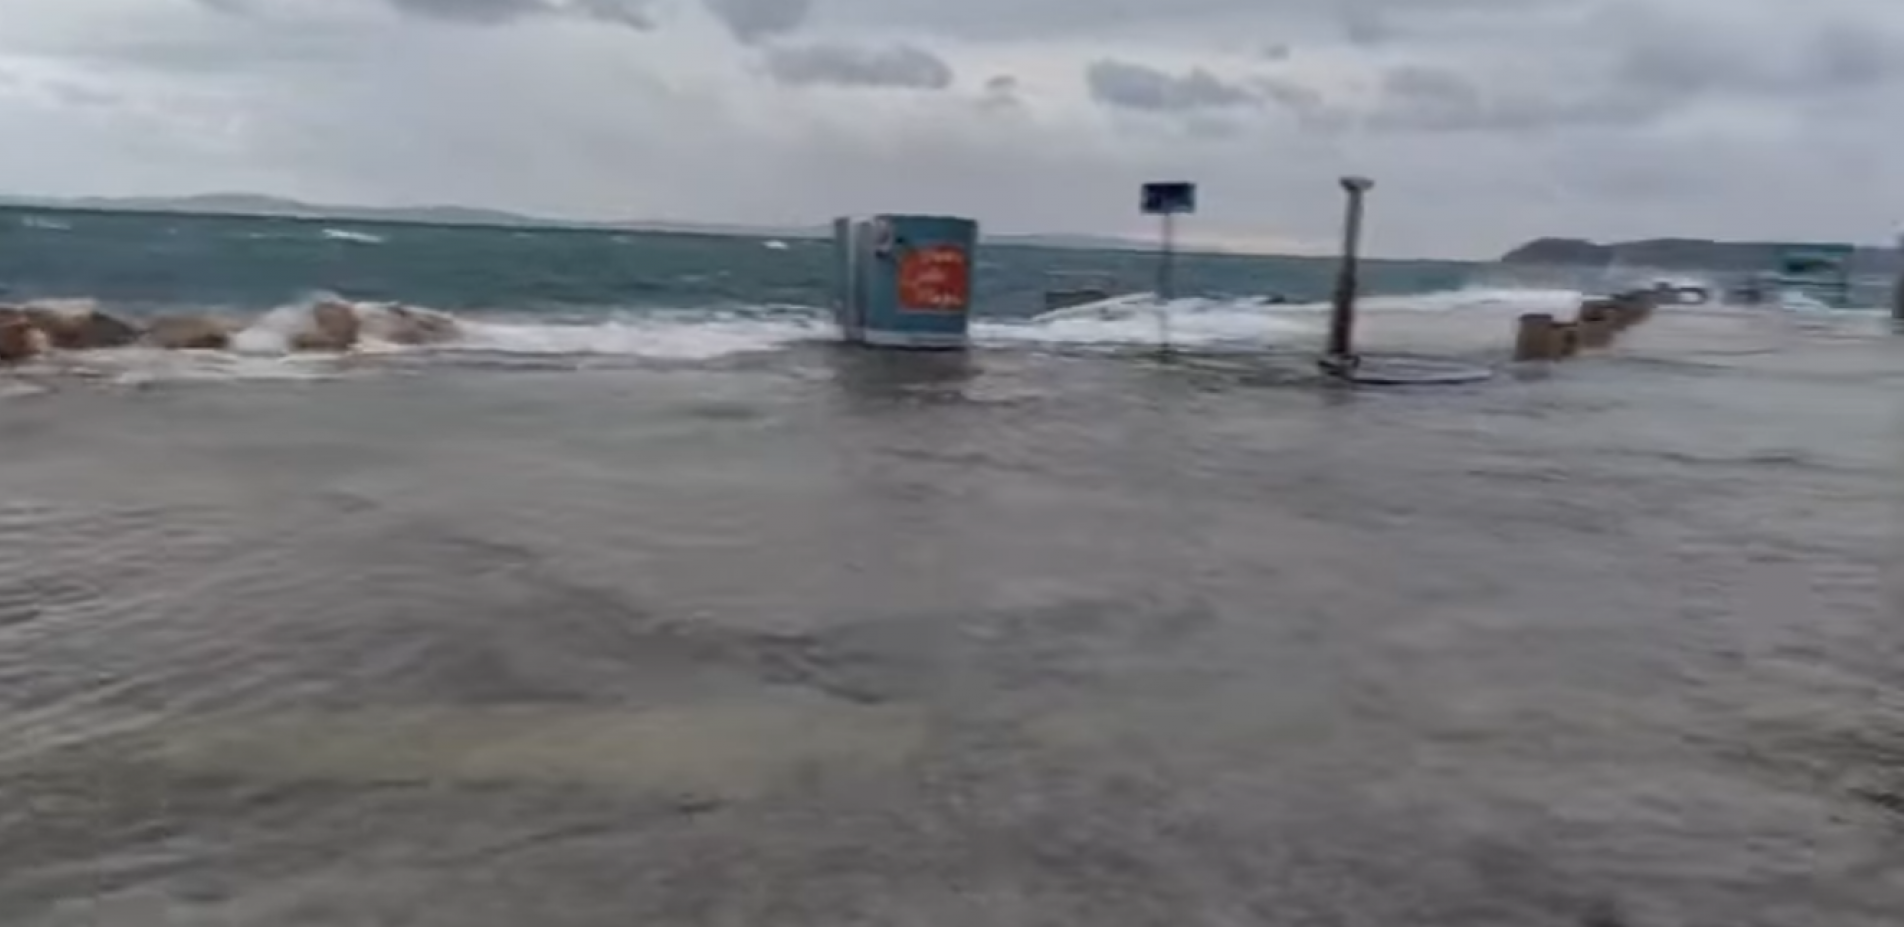 NEVREME ČUPALO DRVEĆE, POPLAVLJENI PUTEVI Pojavio se snimak haosa u Hrvatskoj (VIDEO)